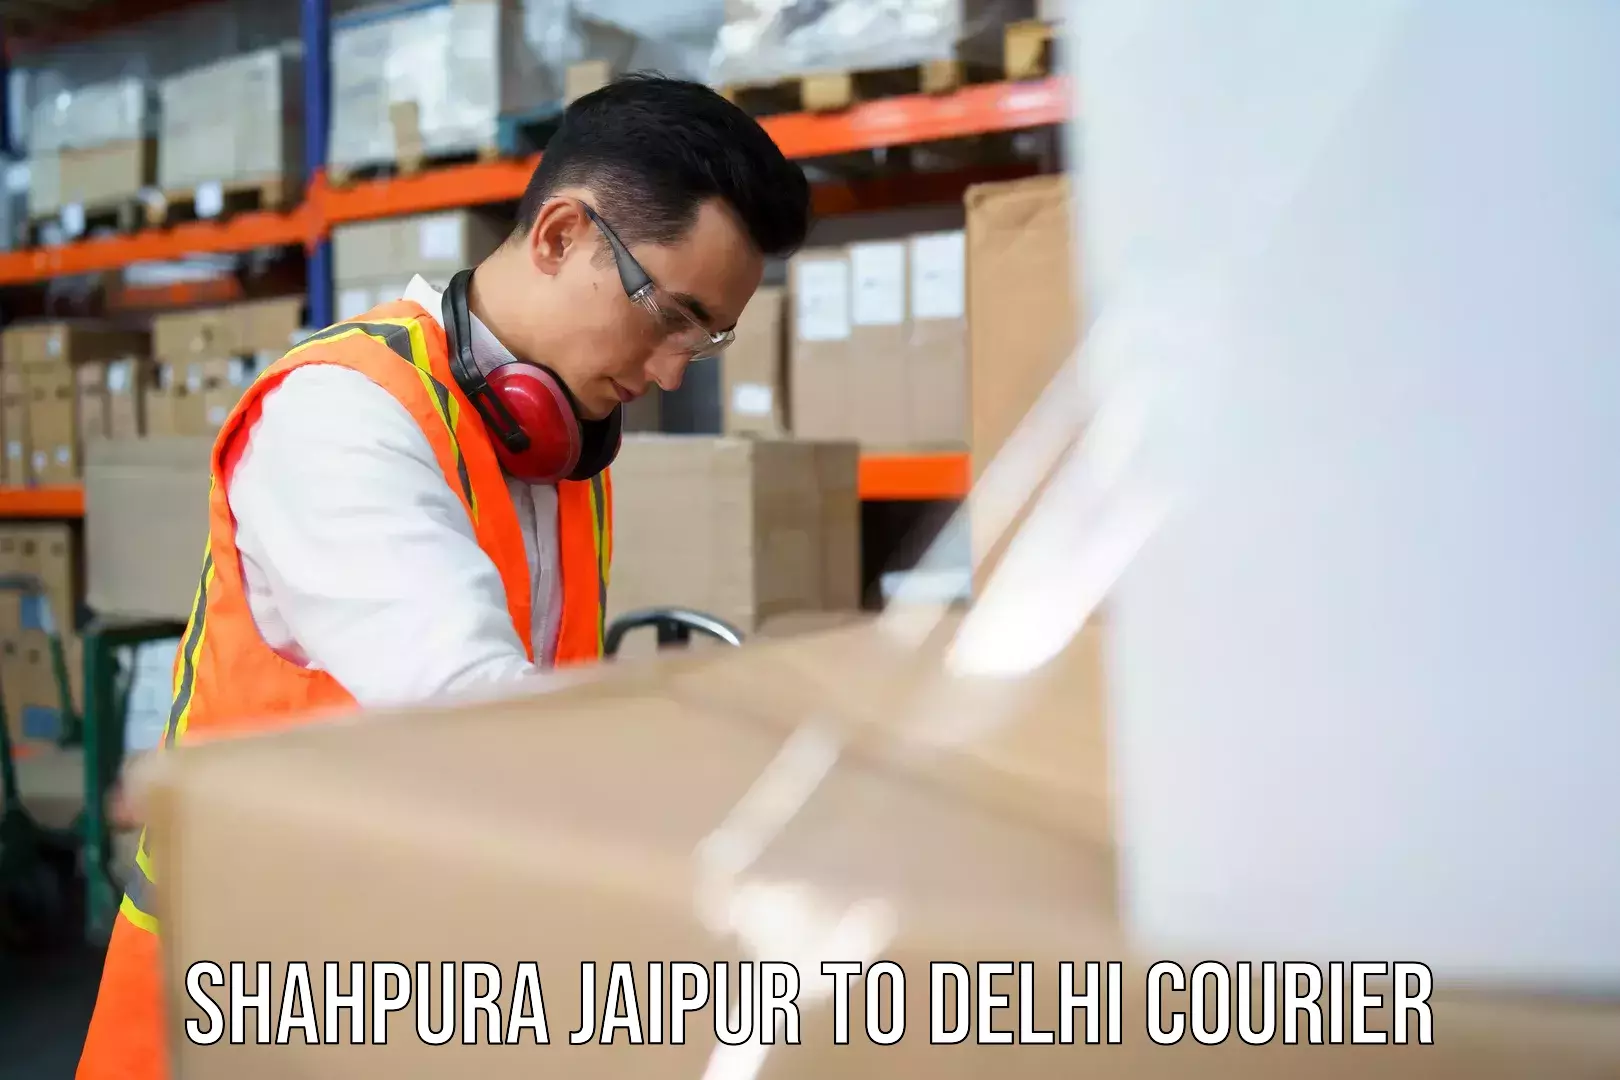 Individual parcel service Shahpura Jaipur to Guru Gobind Singh Indraprastha University New Delhi